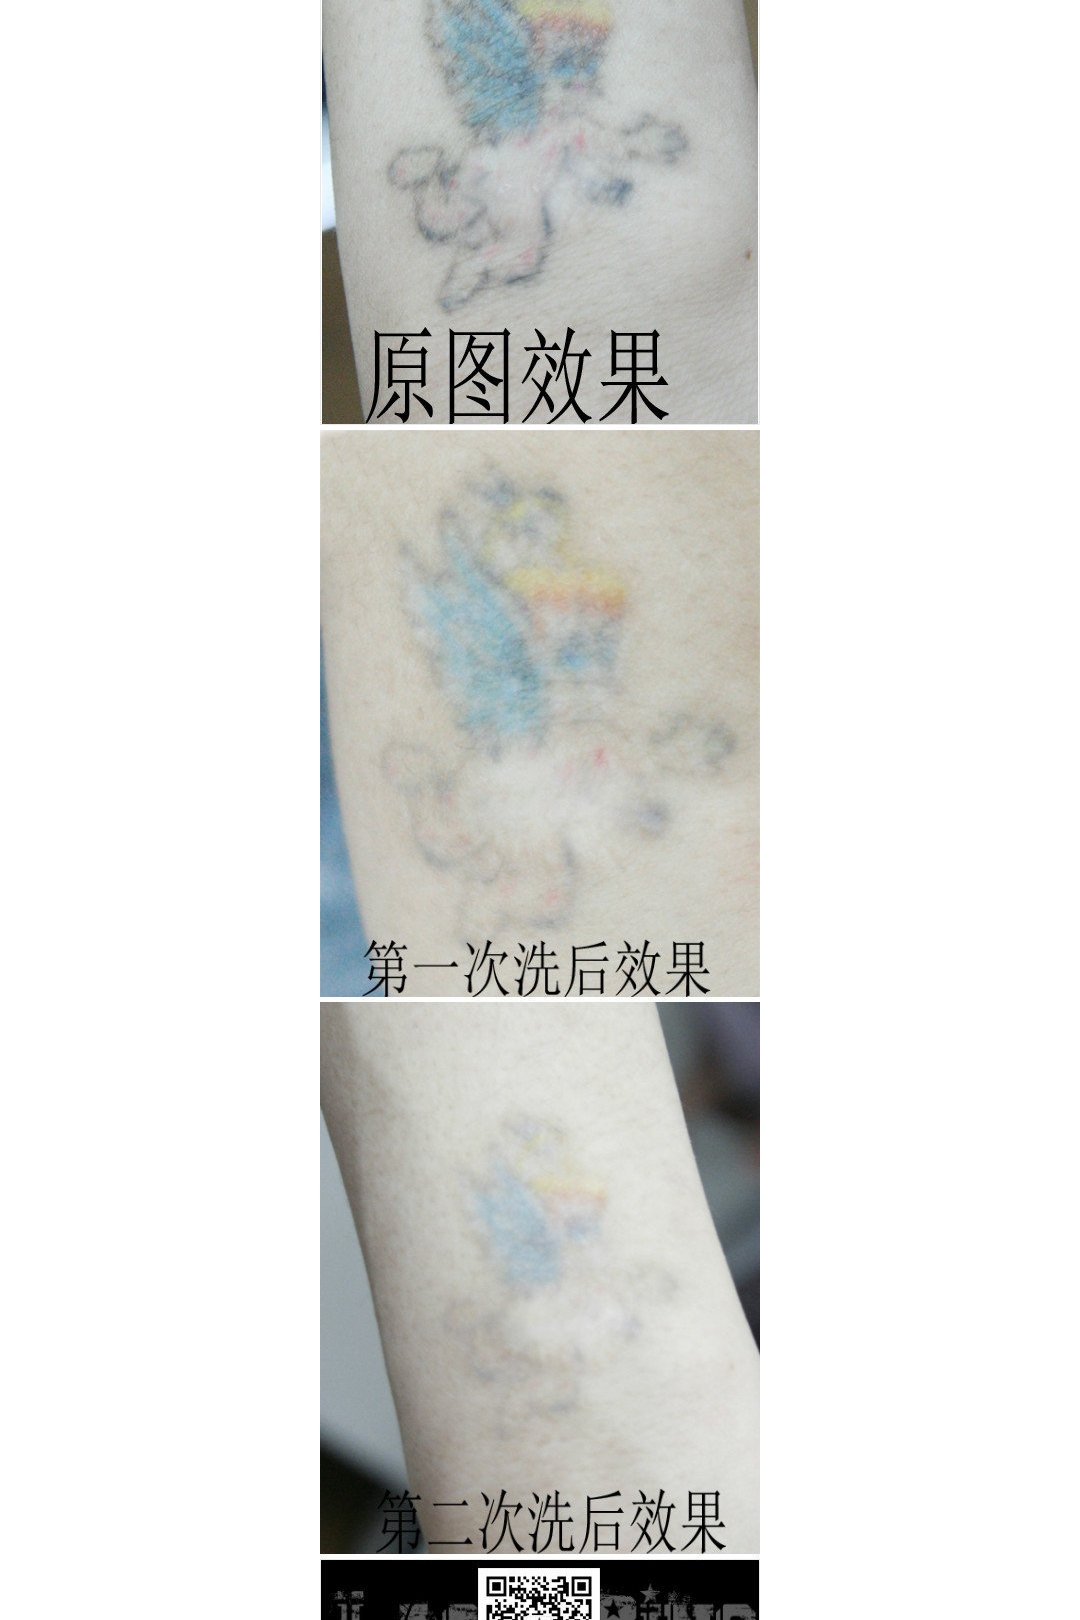 武汉彩色洗纹身效果最好的店带来一组彩色洗纹身效果案例